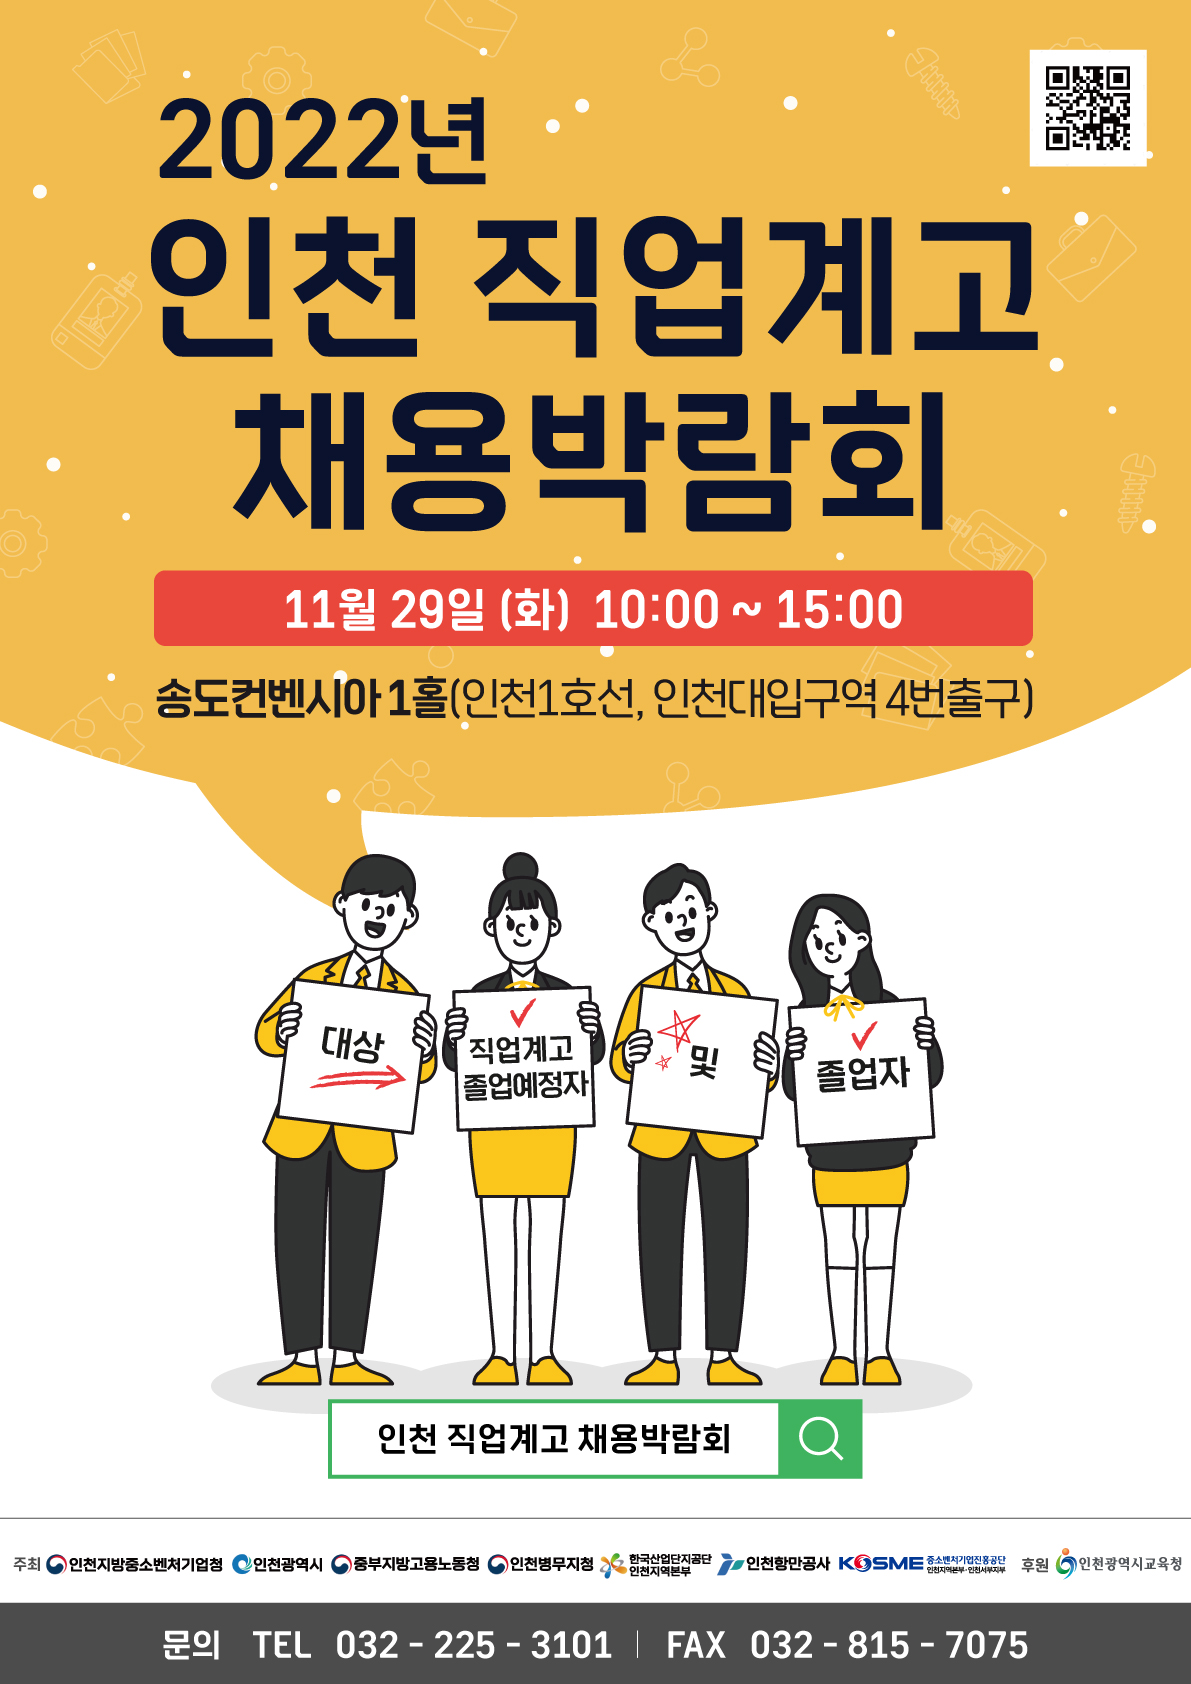 2022 인천 직업계고 채용박람회 개최